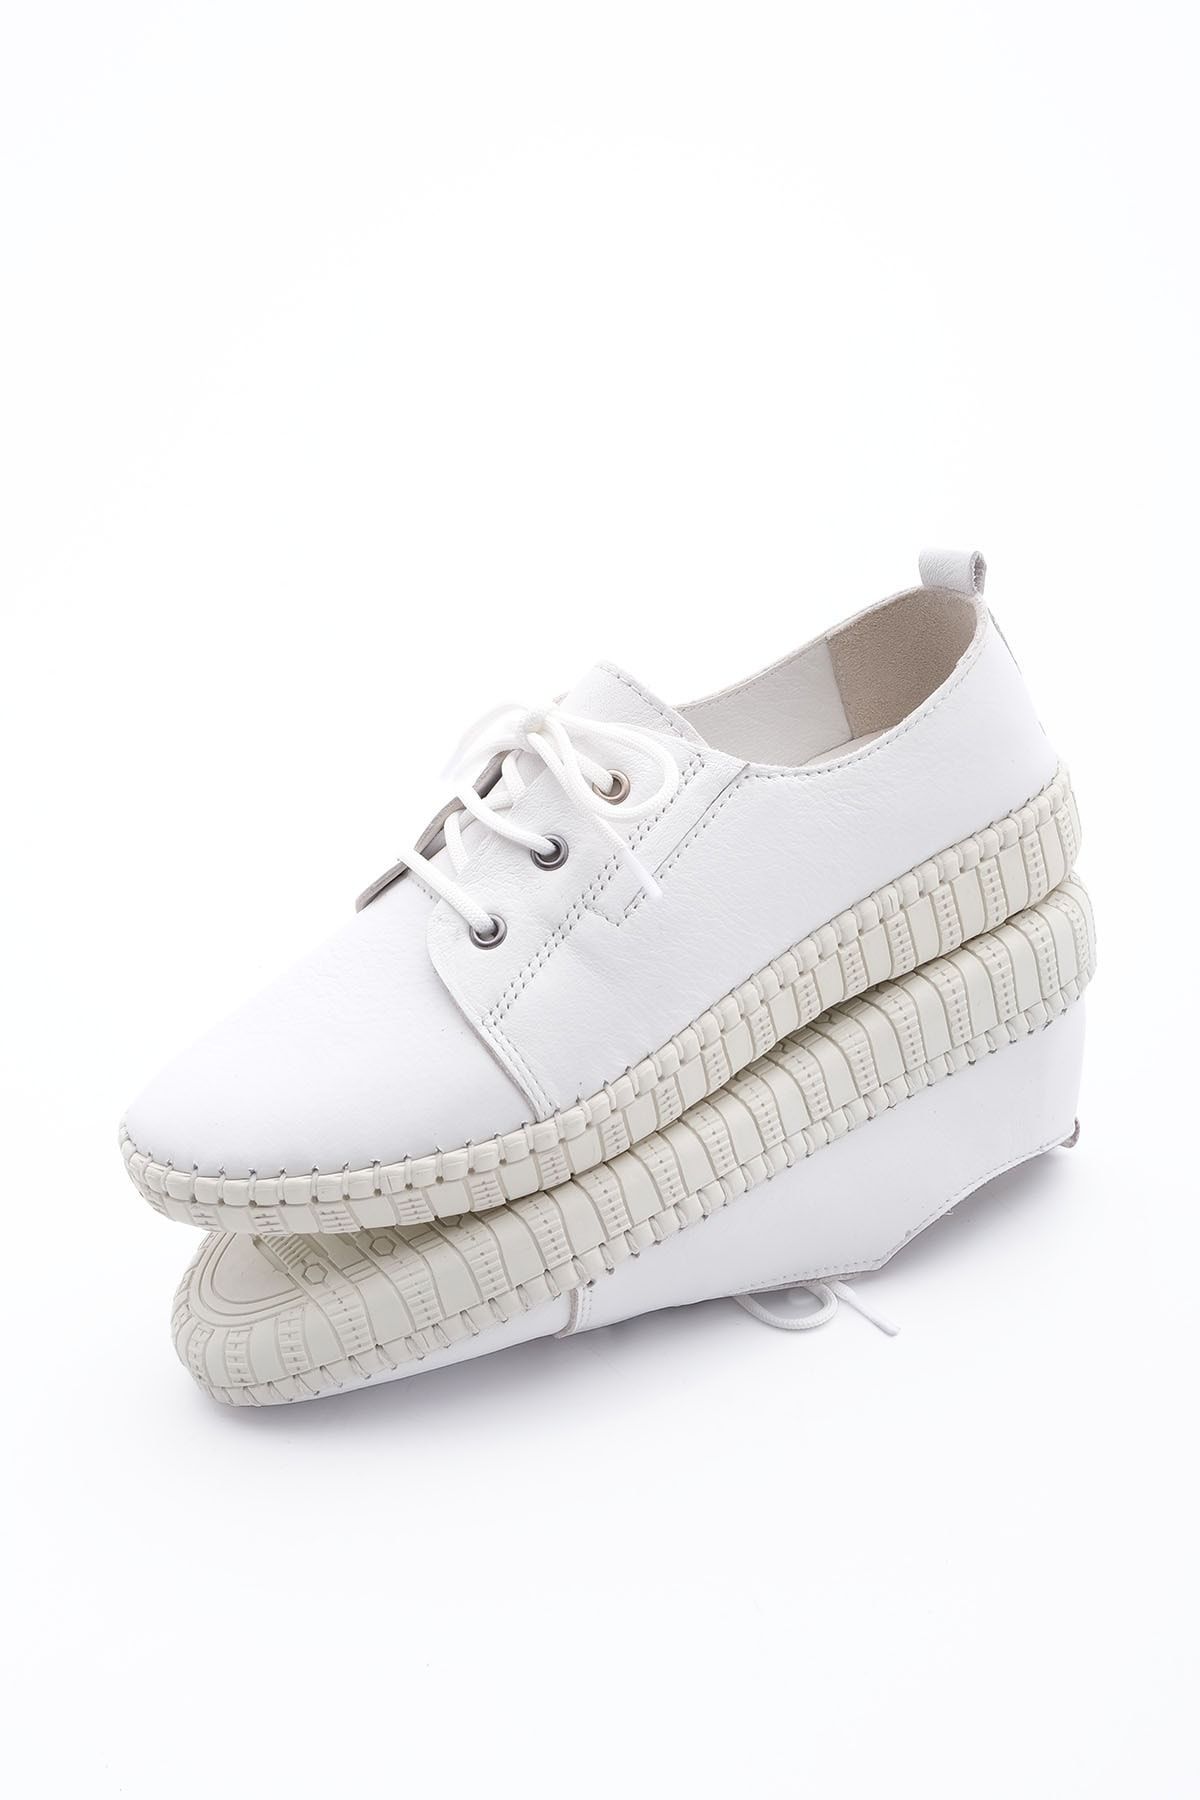 Marjin Kadın Hakiki Deri Comfort Ayakkabı Resa beyaz